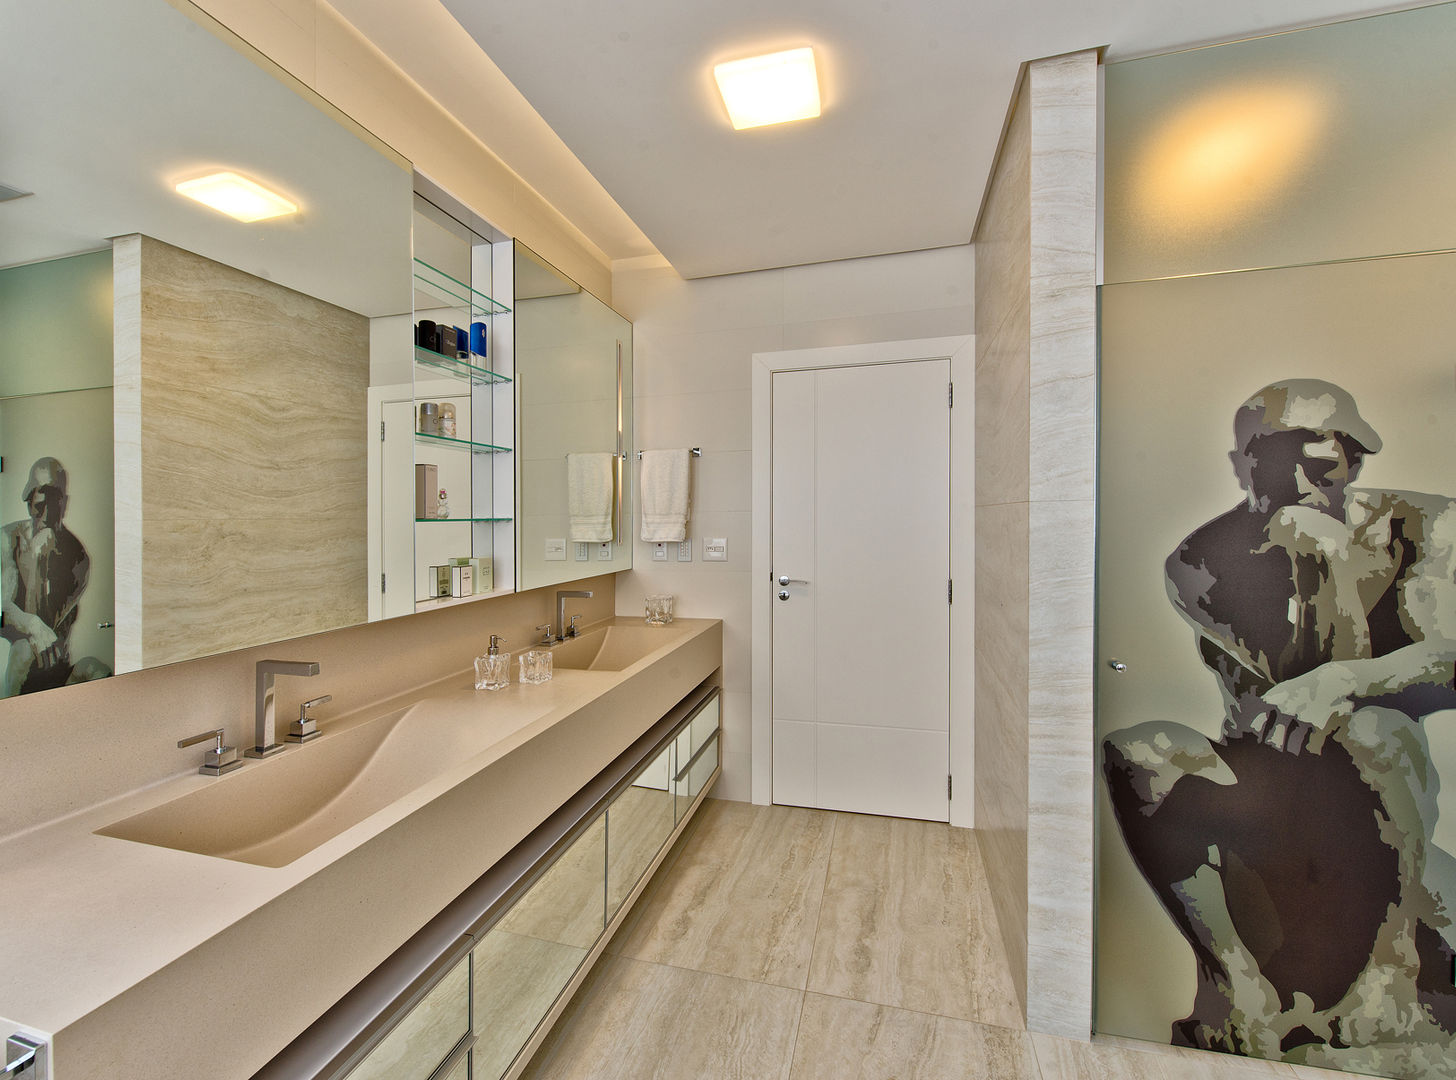 Cobertura de luxo, Espaço do Traço arquitetura Espaço do Traço arquitetura Ванная комната в стиле модерн